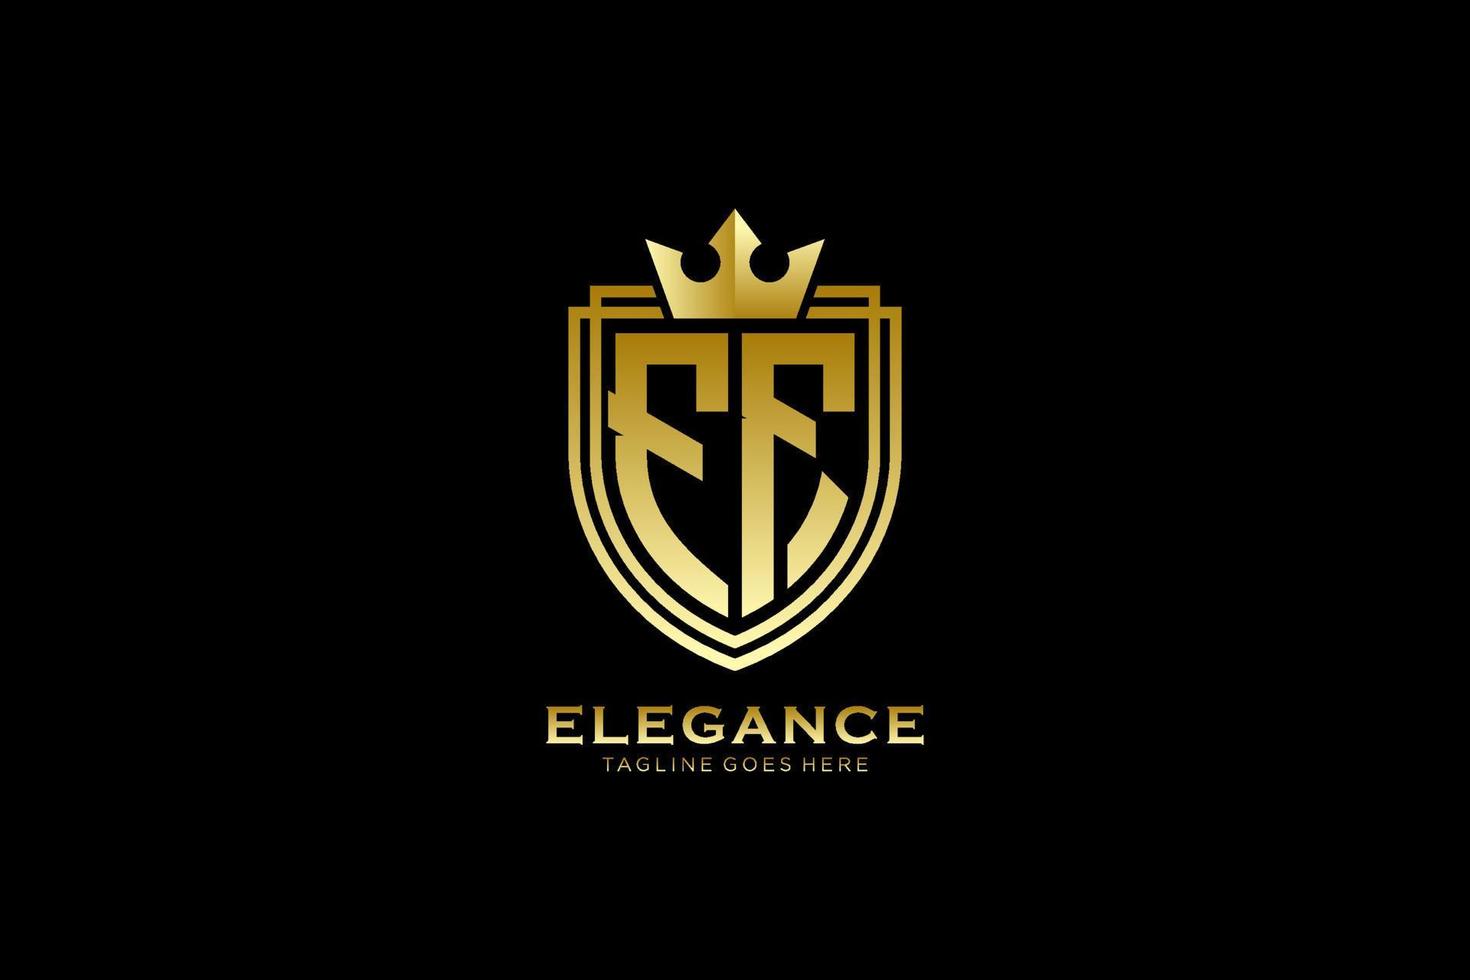 logotipo de monograma de lujo inicial ff elegante o plantilla de insignia con pergaminos y corona real - perfecto para proyectos de marca de lujo vector